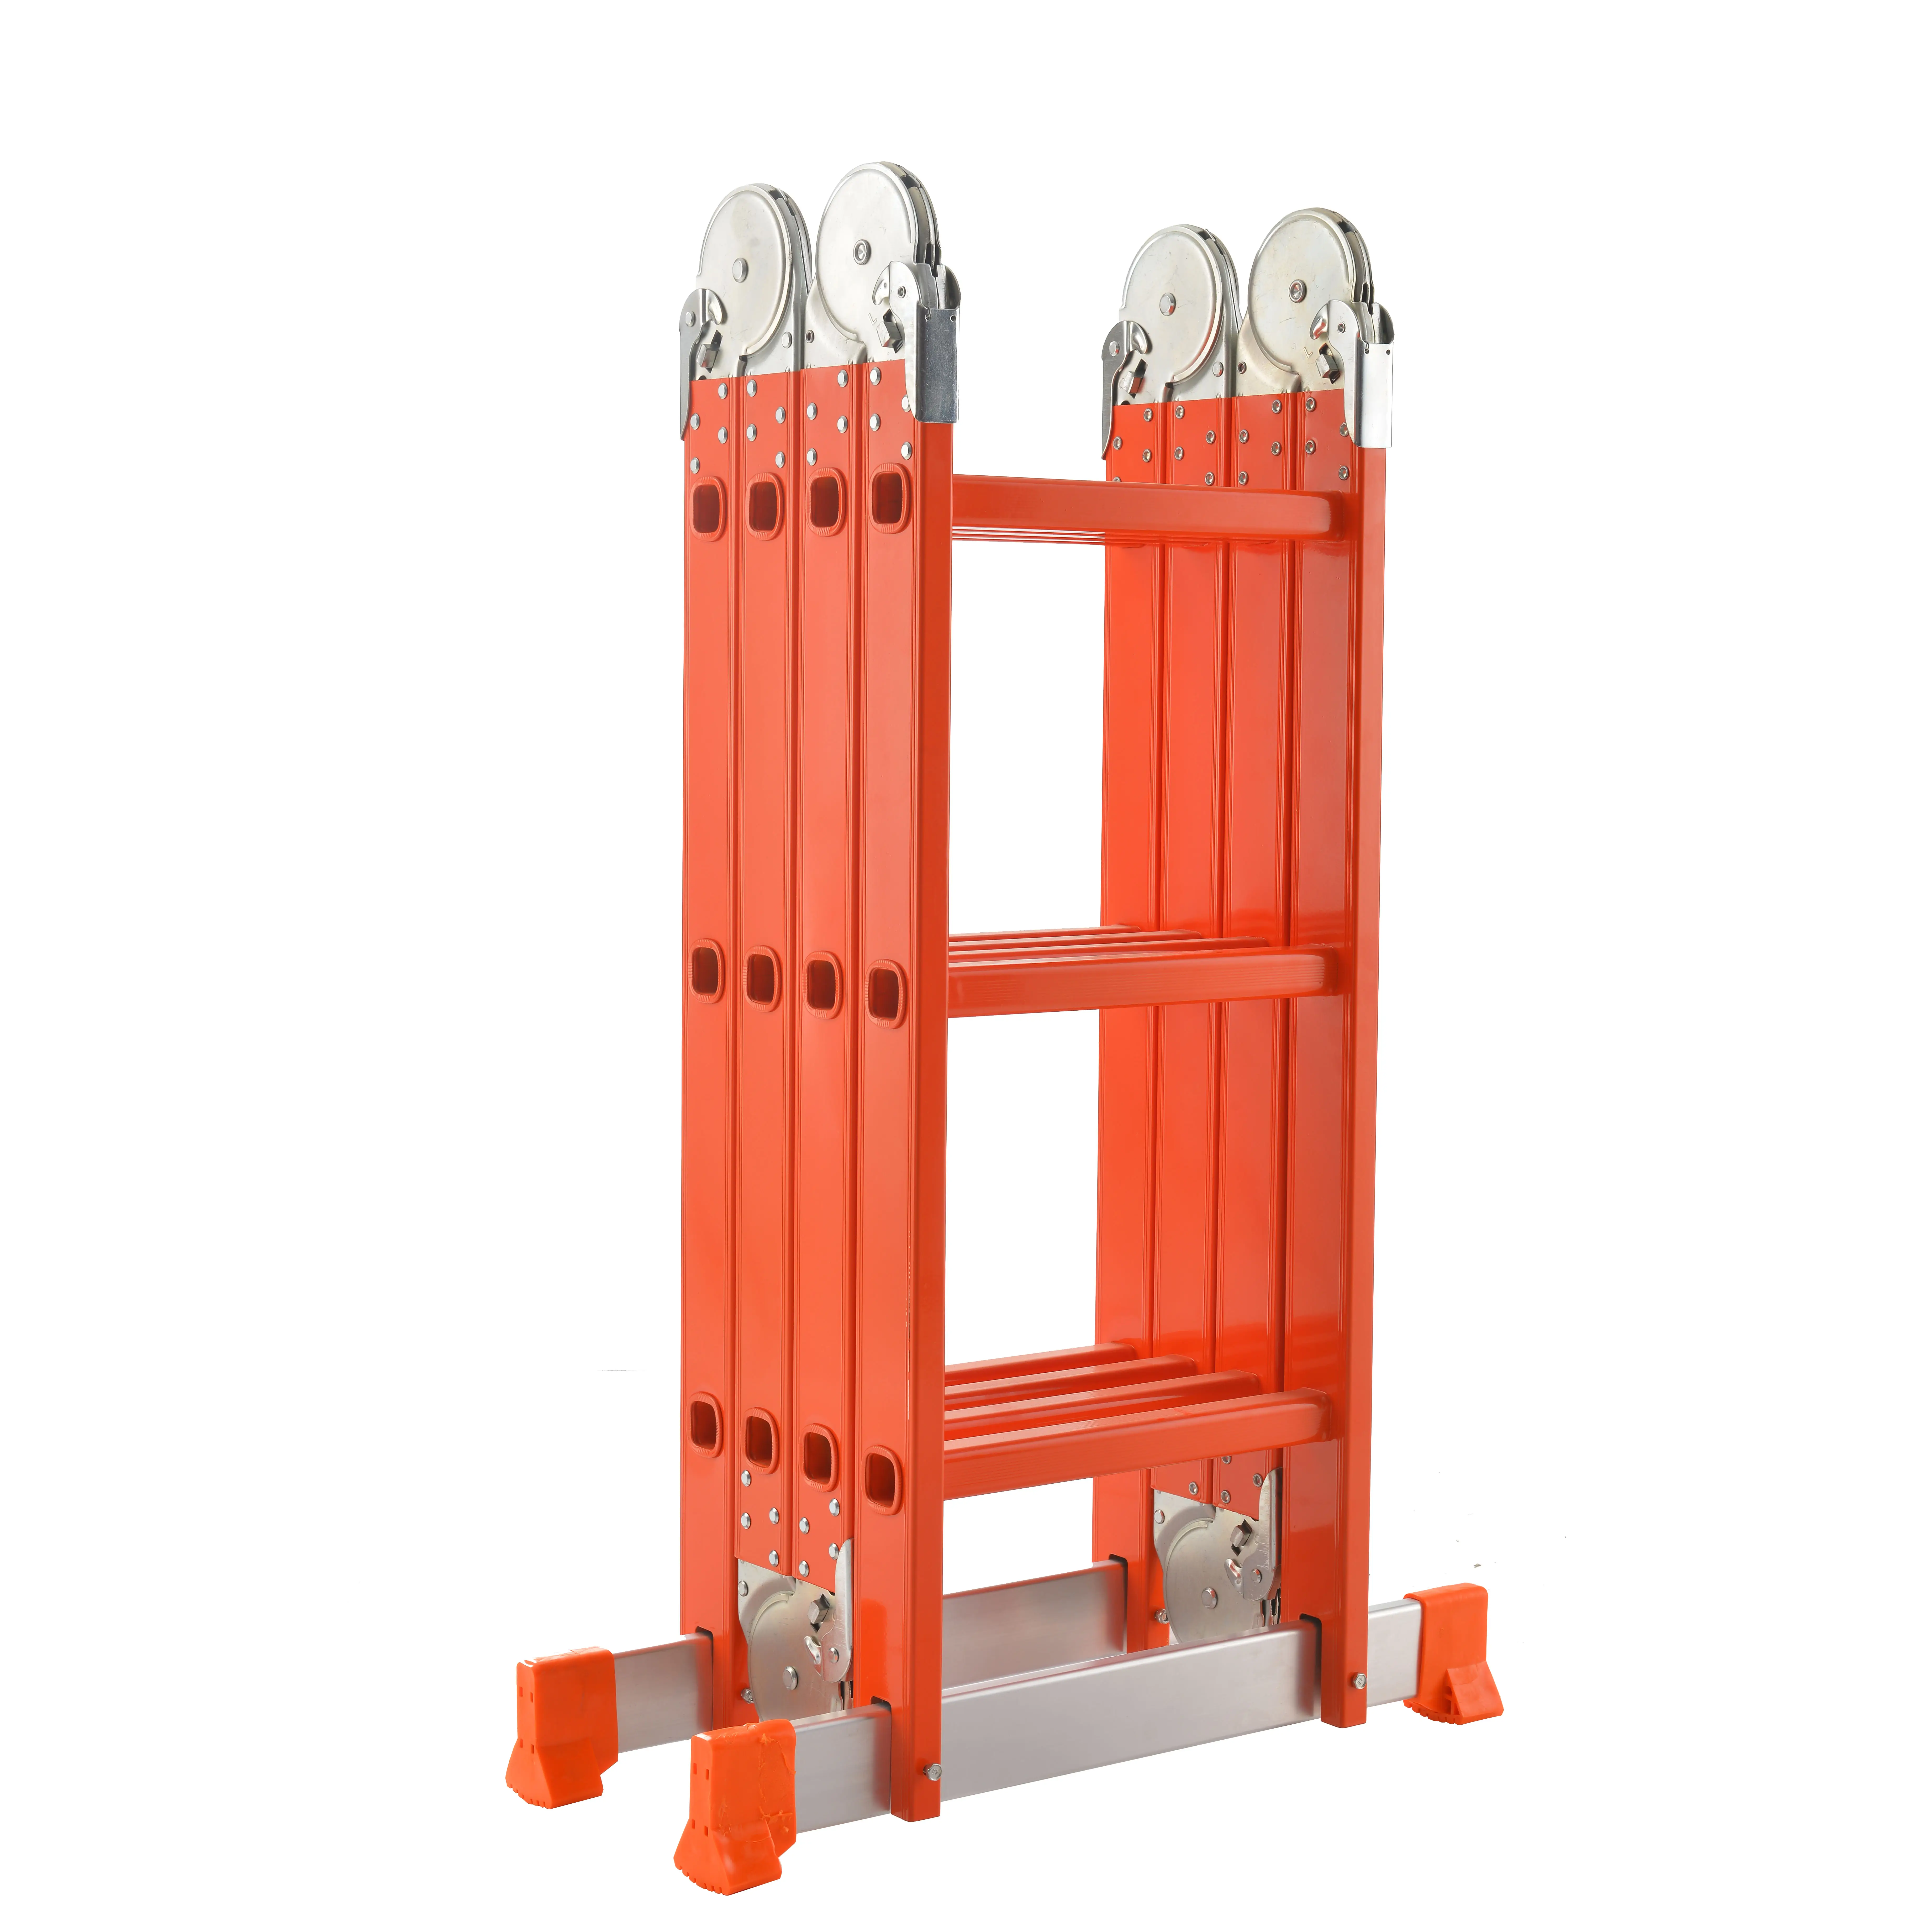 Platform Aluminium Ladder Escada Aluminio Multiproposito 4*3 Precio De Fabrica Directo 3.6M Ajustable Veiligheid Ladder